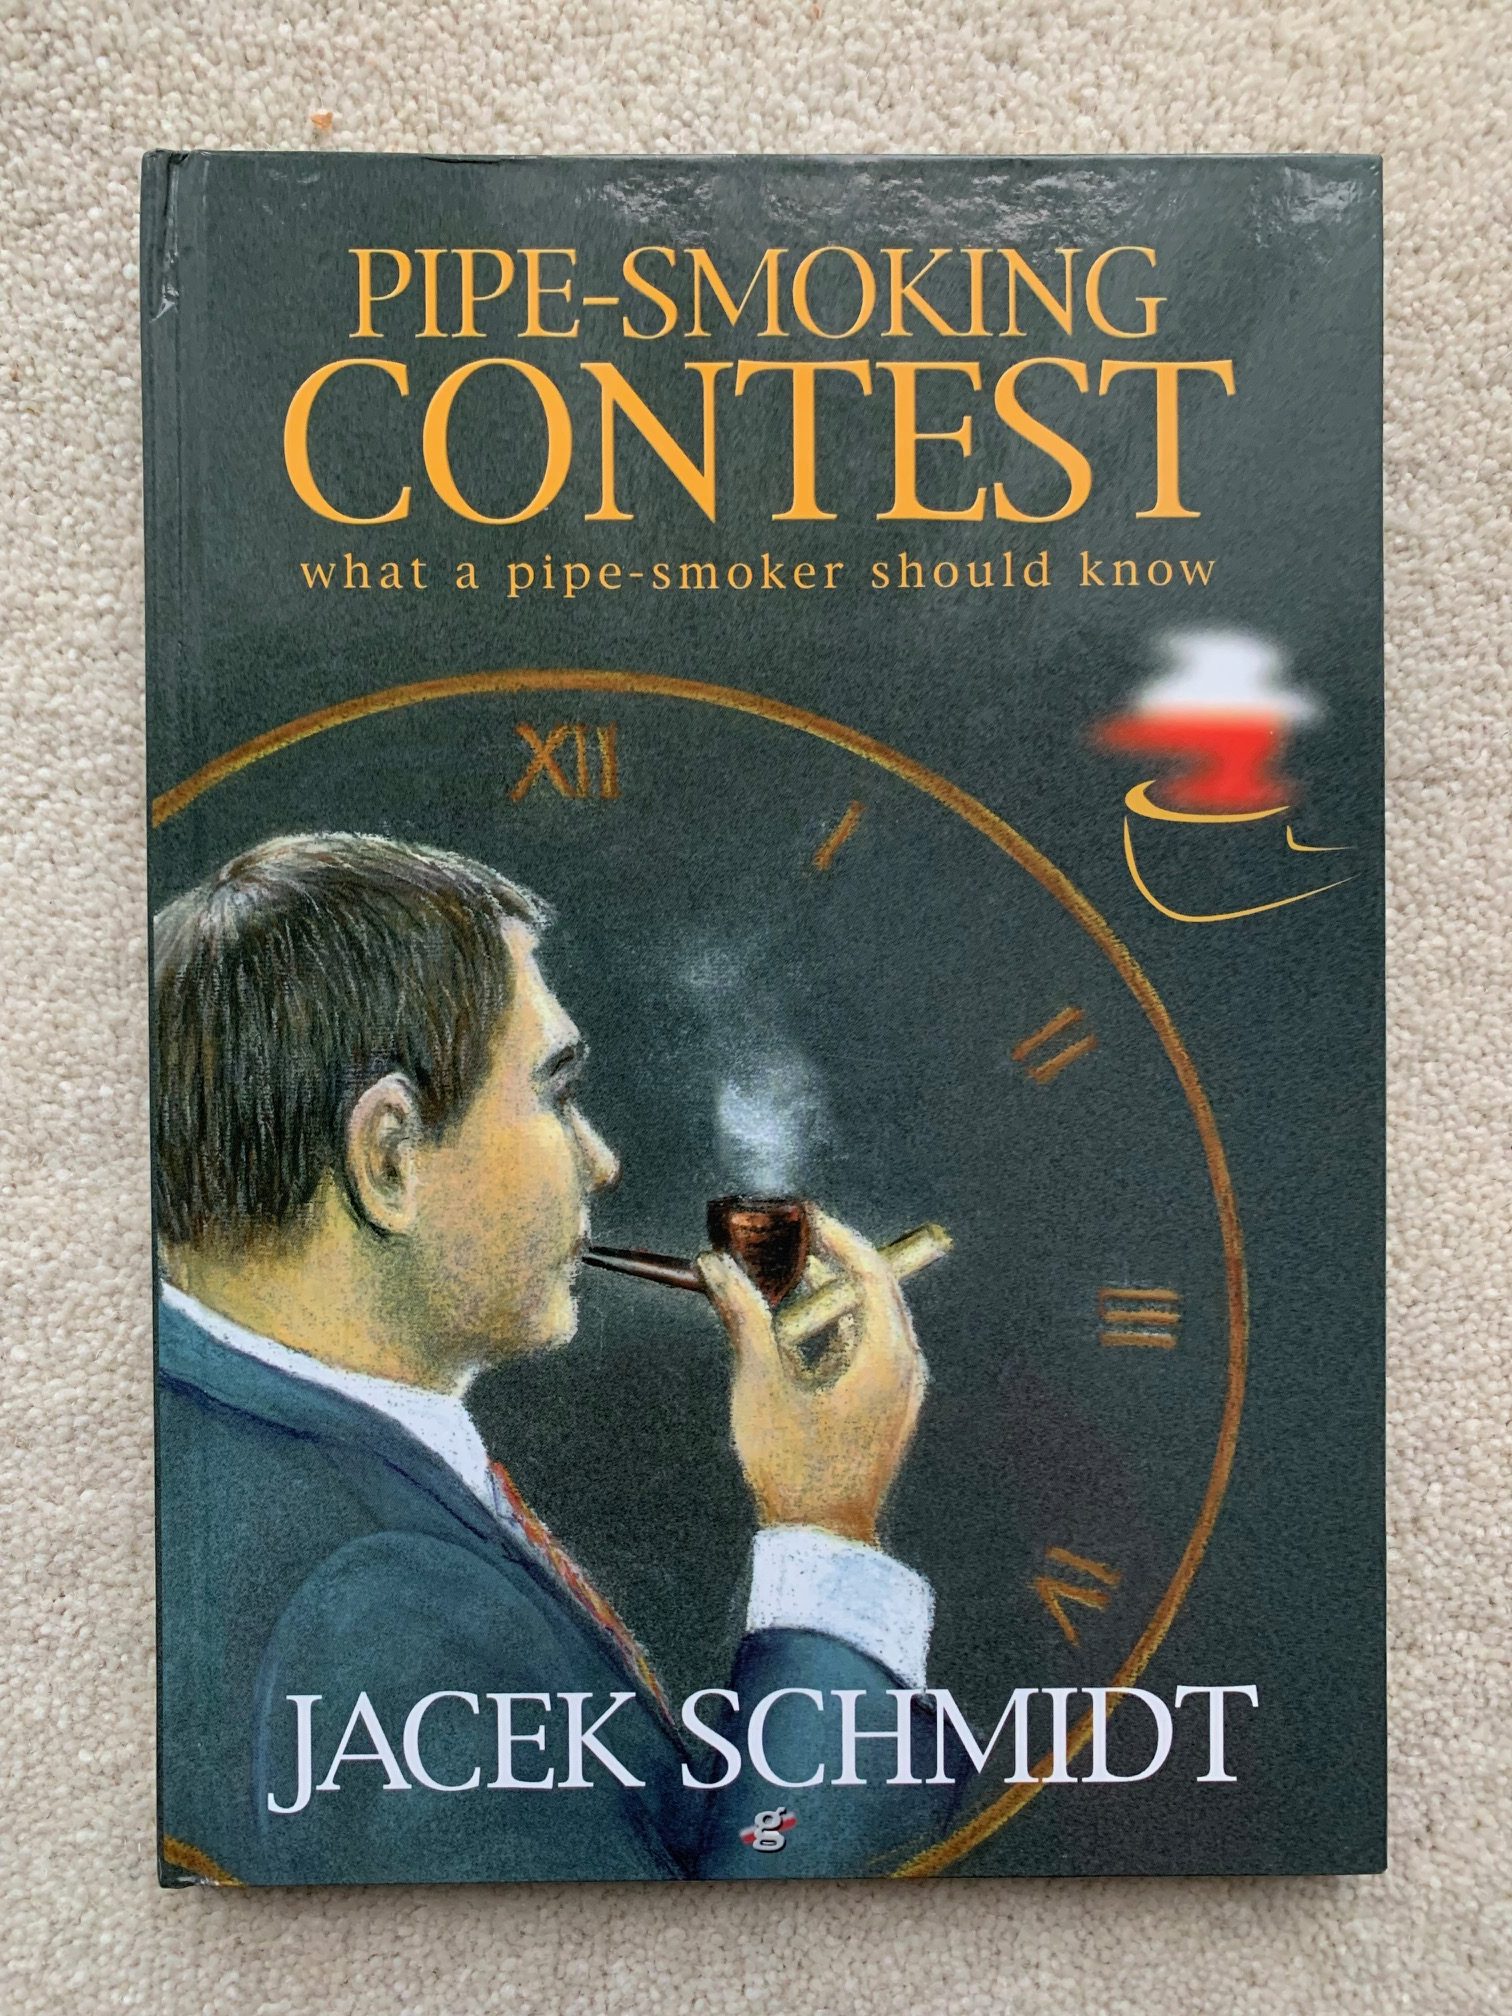 Pipe-Smoking Contest - Jacek Schmidt Image